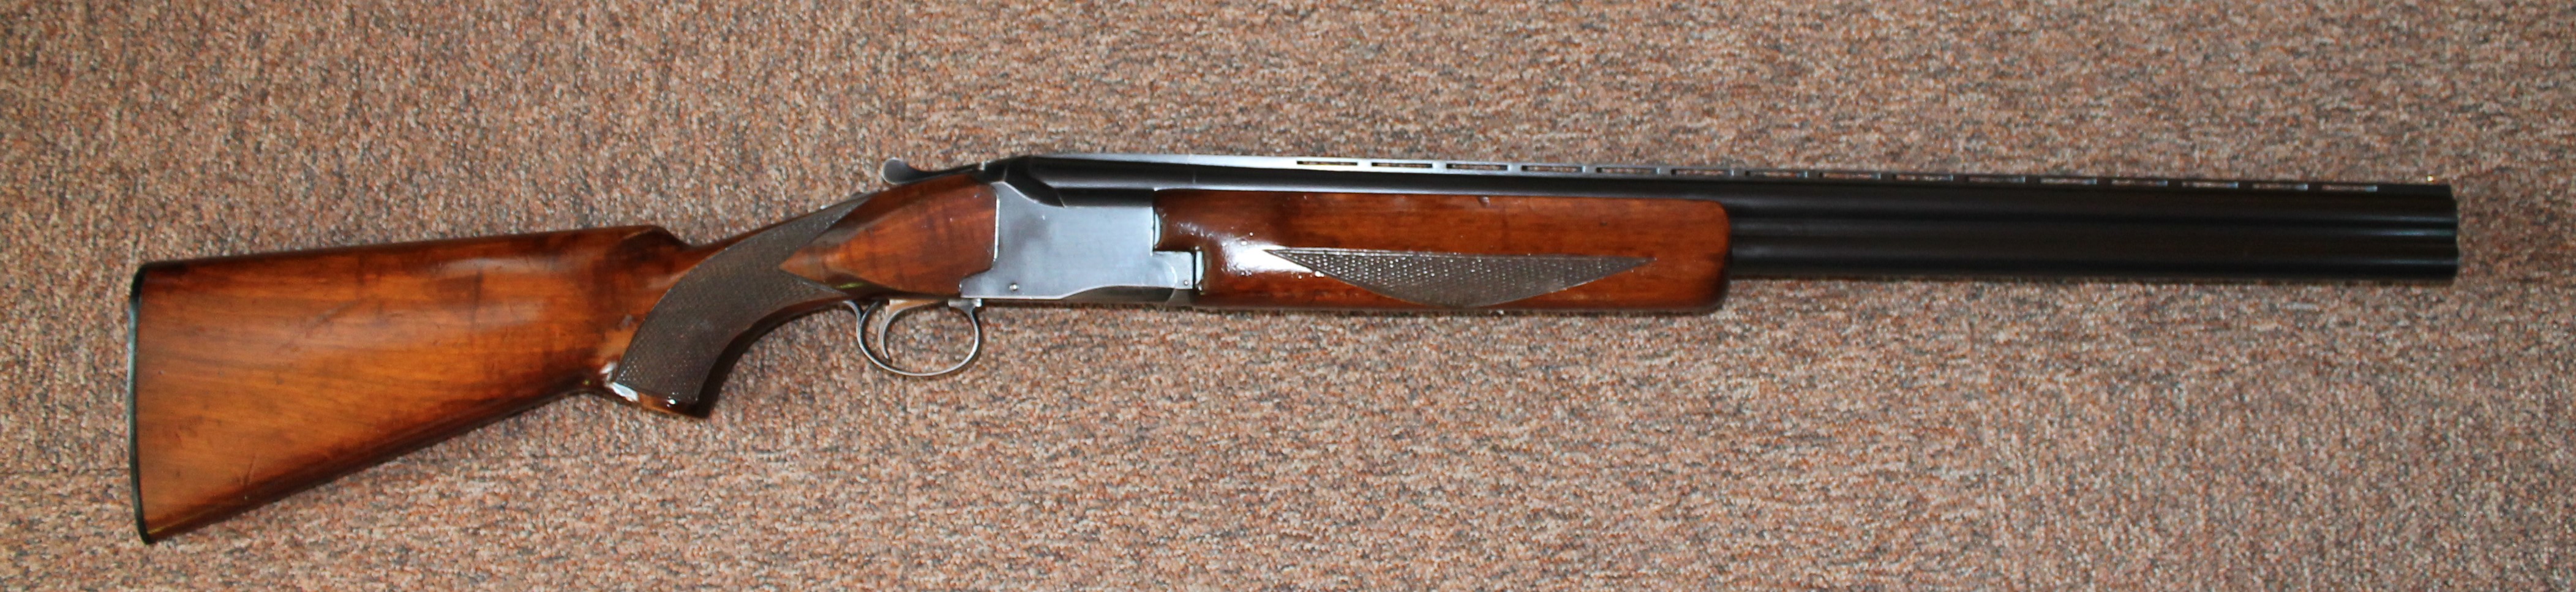 Winchester 96 kal 12-76JPG